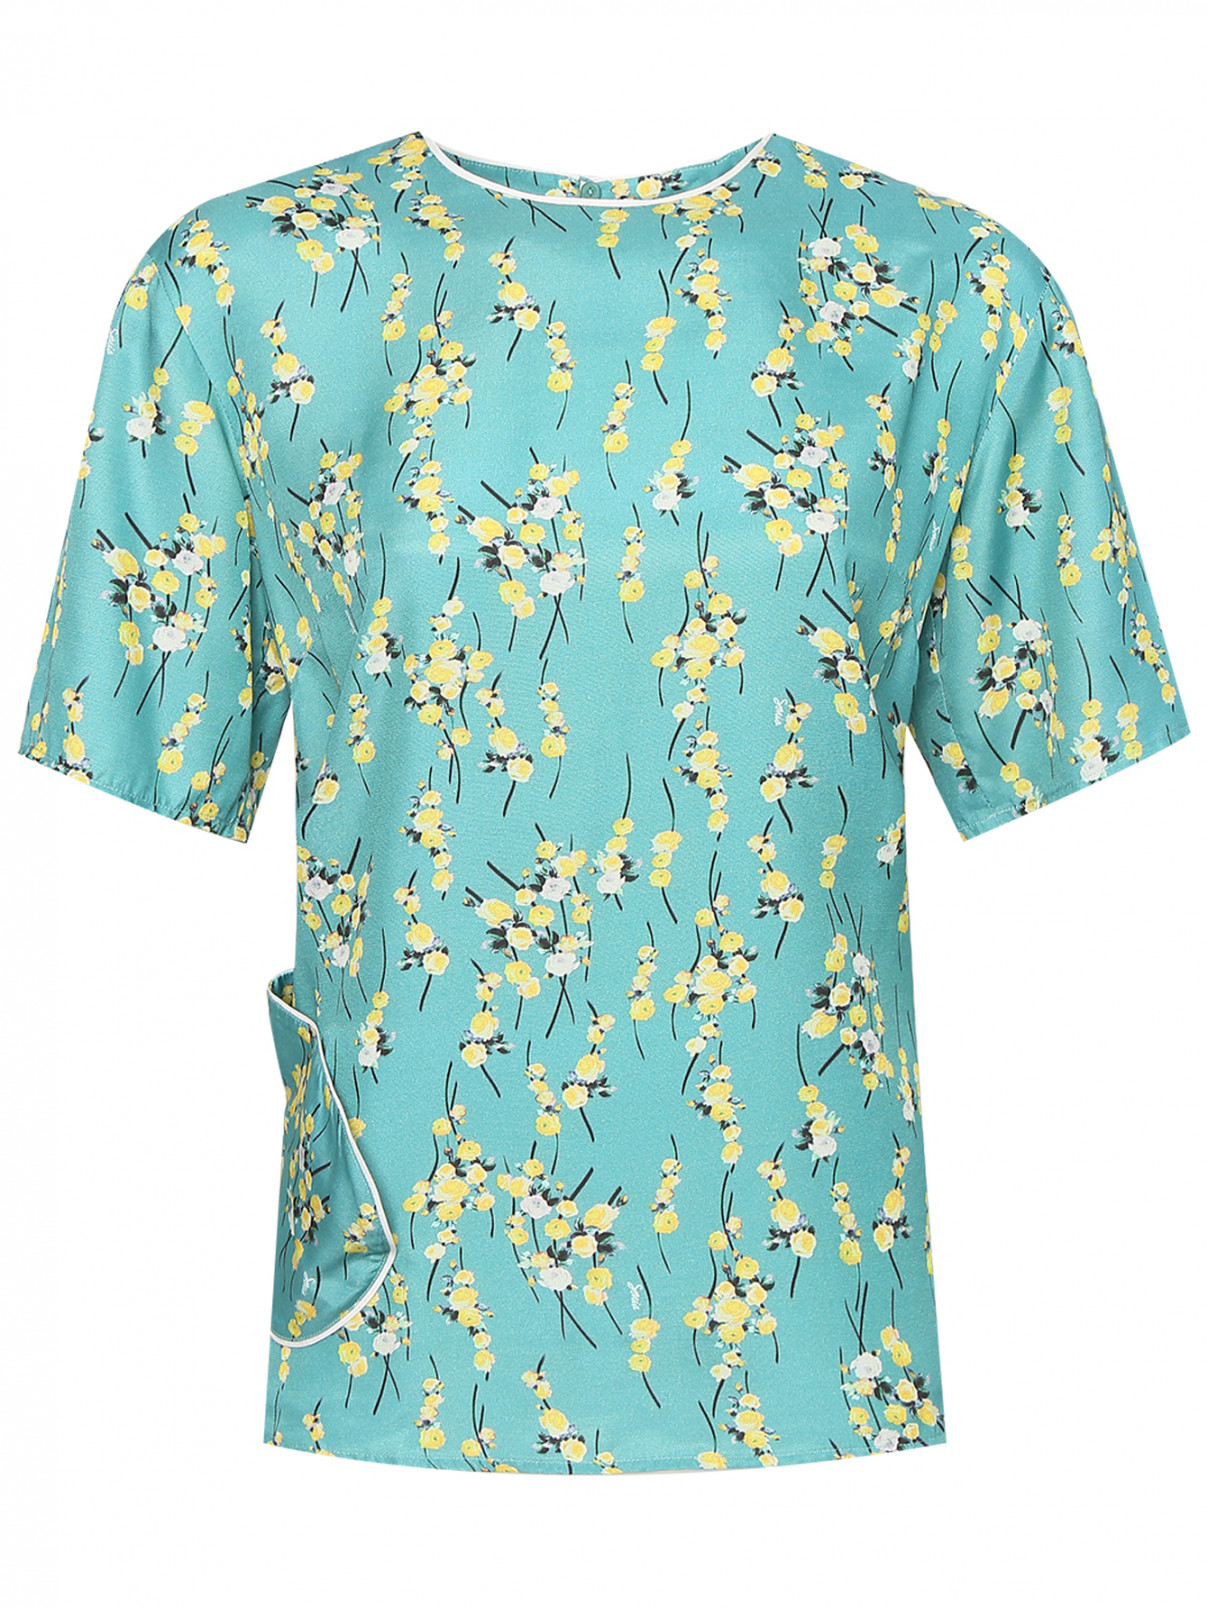 Блуза с короткими рукавами Sonia Rykiel  –  Общий вид  – Цвет:  Синий